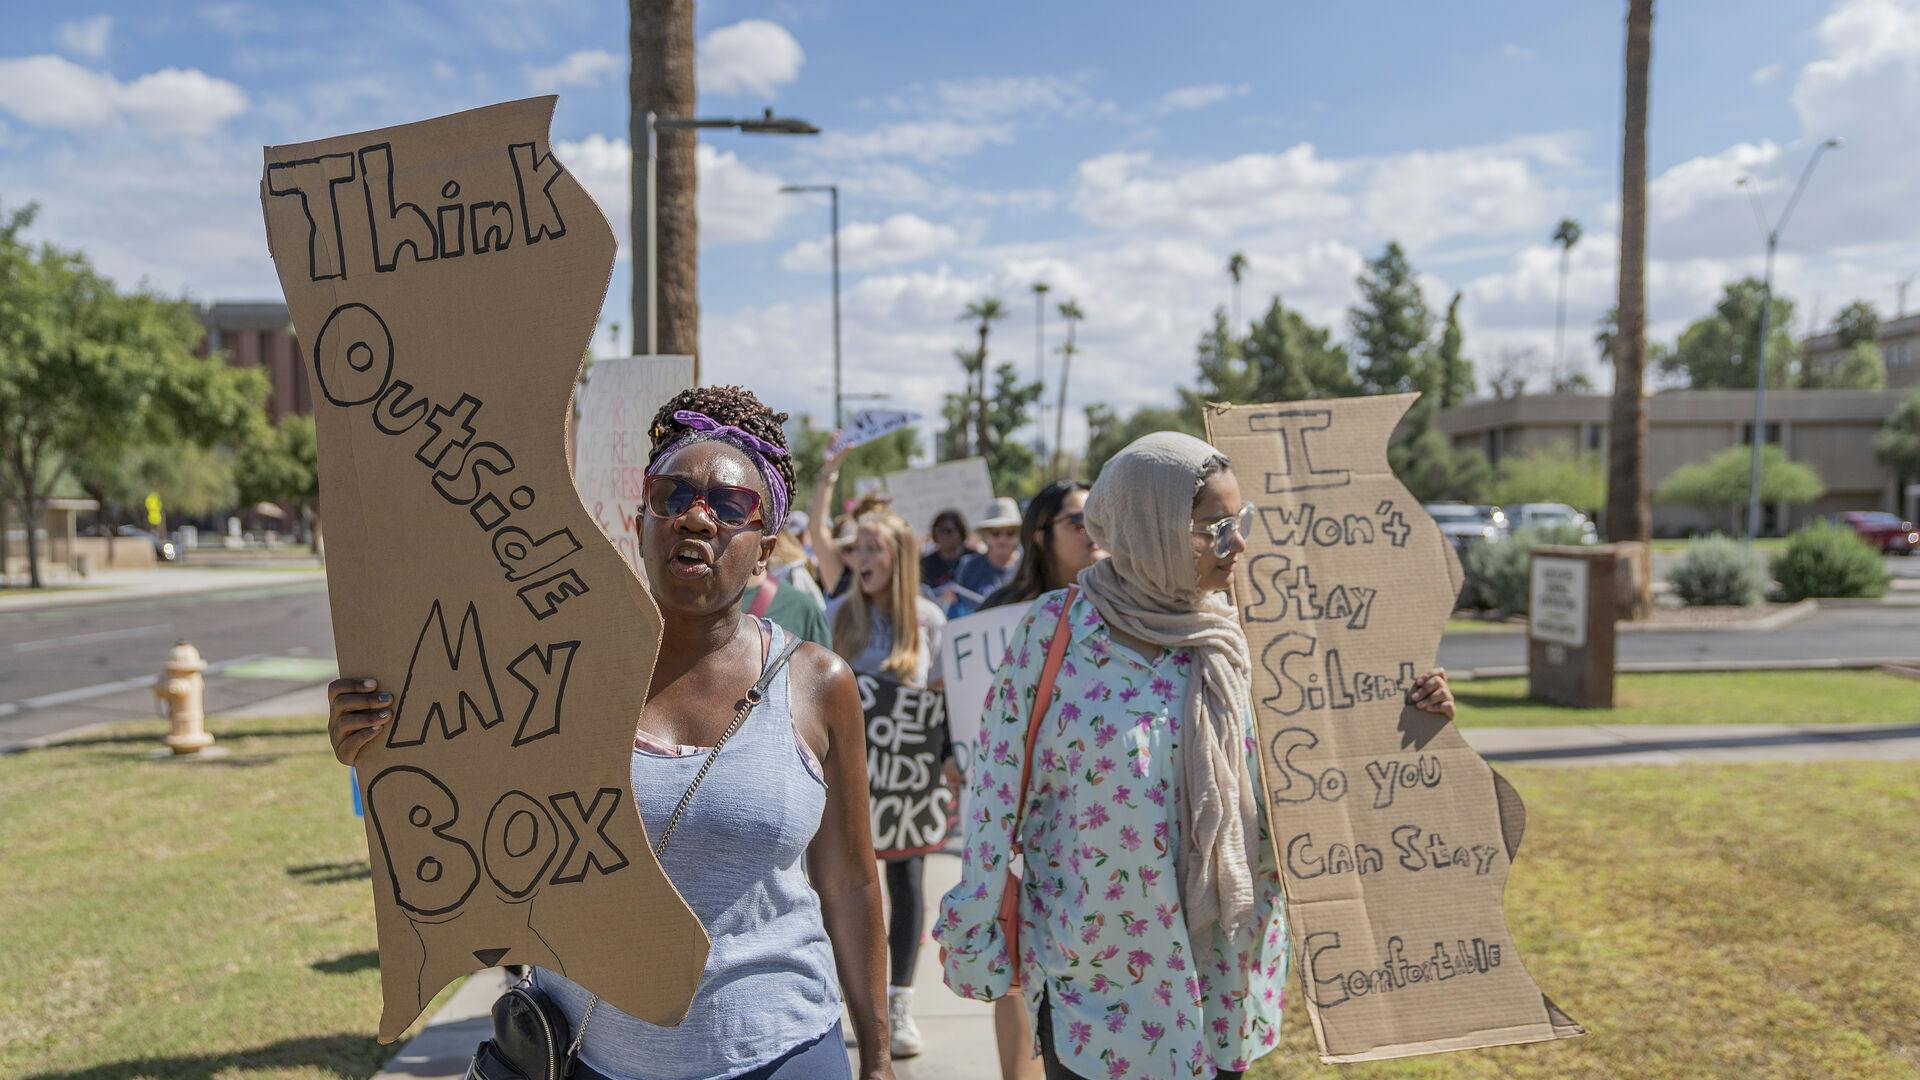 Kvinder demonstrere i Phoenix, Arizona for kvinders ret til abort. Retten til fri abort i USA er et af de store emner under midtvejs valget 8 november, efter at USA's højesteret i 2022 officielt underkendt afgørelsen fra 1973, der sikrede amerikanske kvinders ret til fri abort.